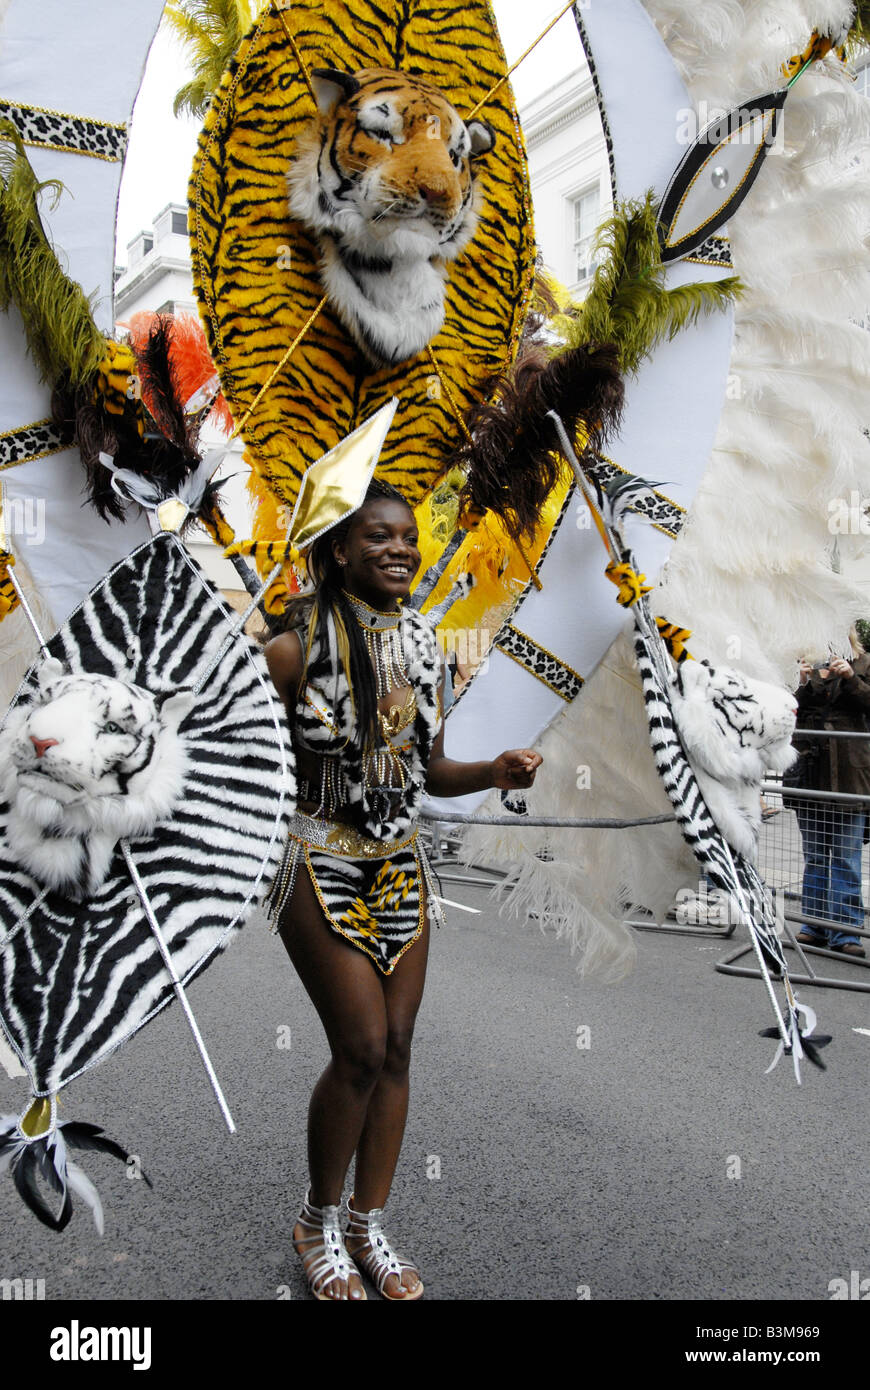 Carnival dancing immagini e fotografie stock ad alta risoluzione - Alamy